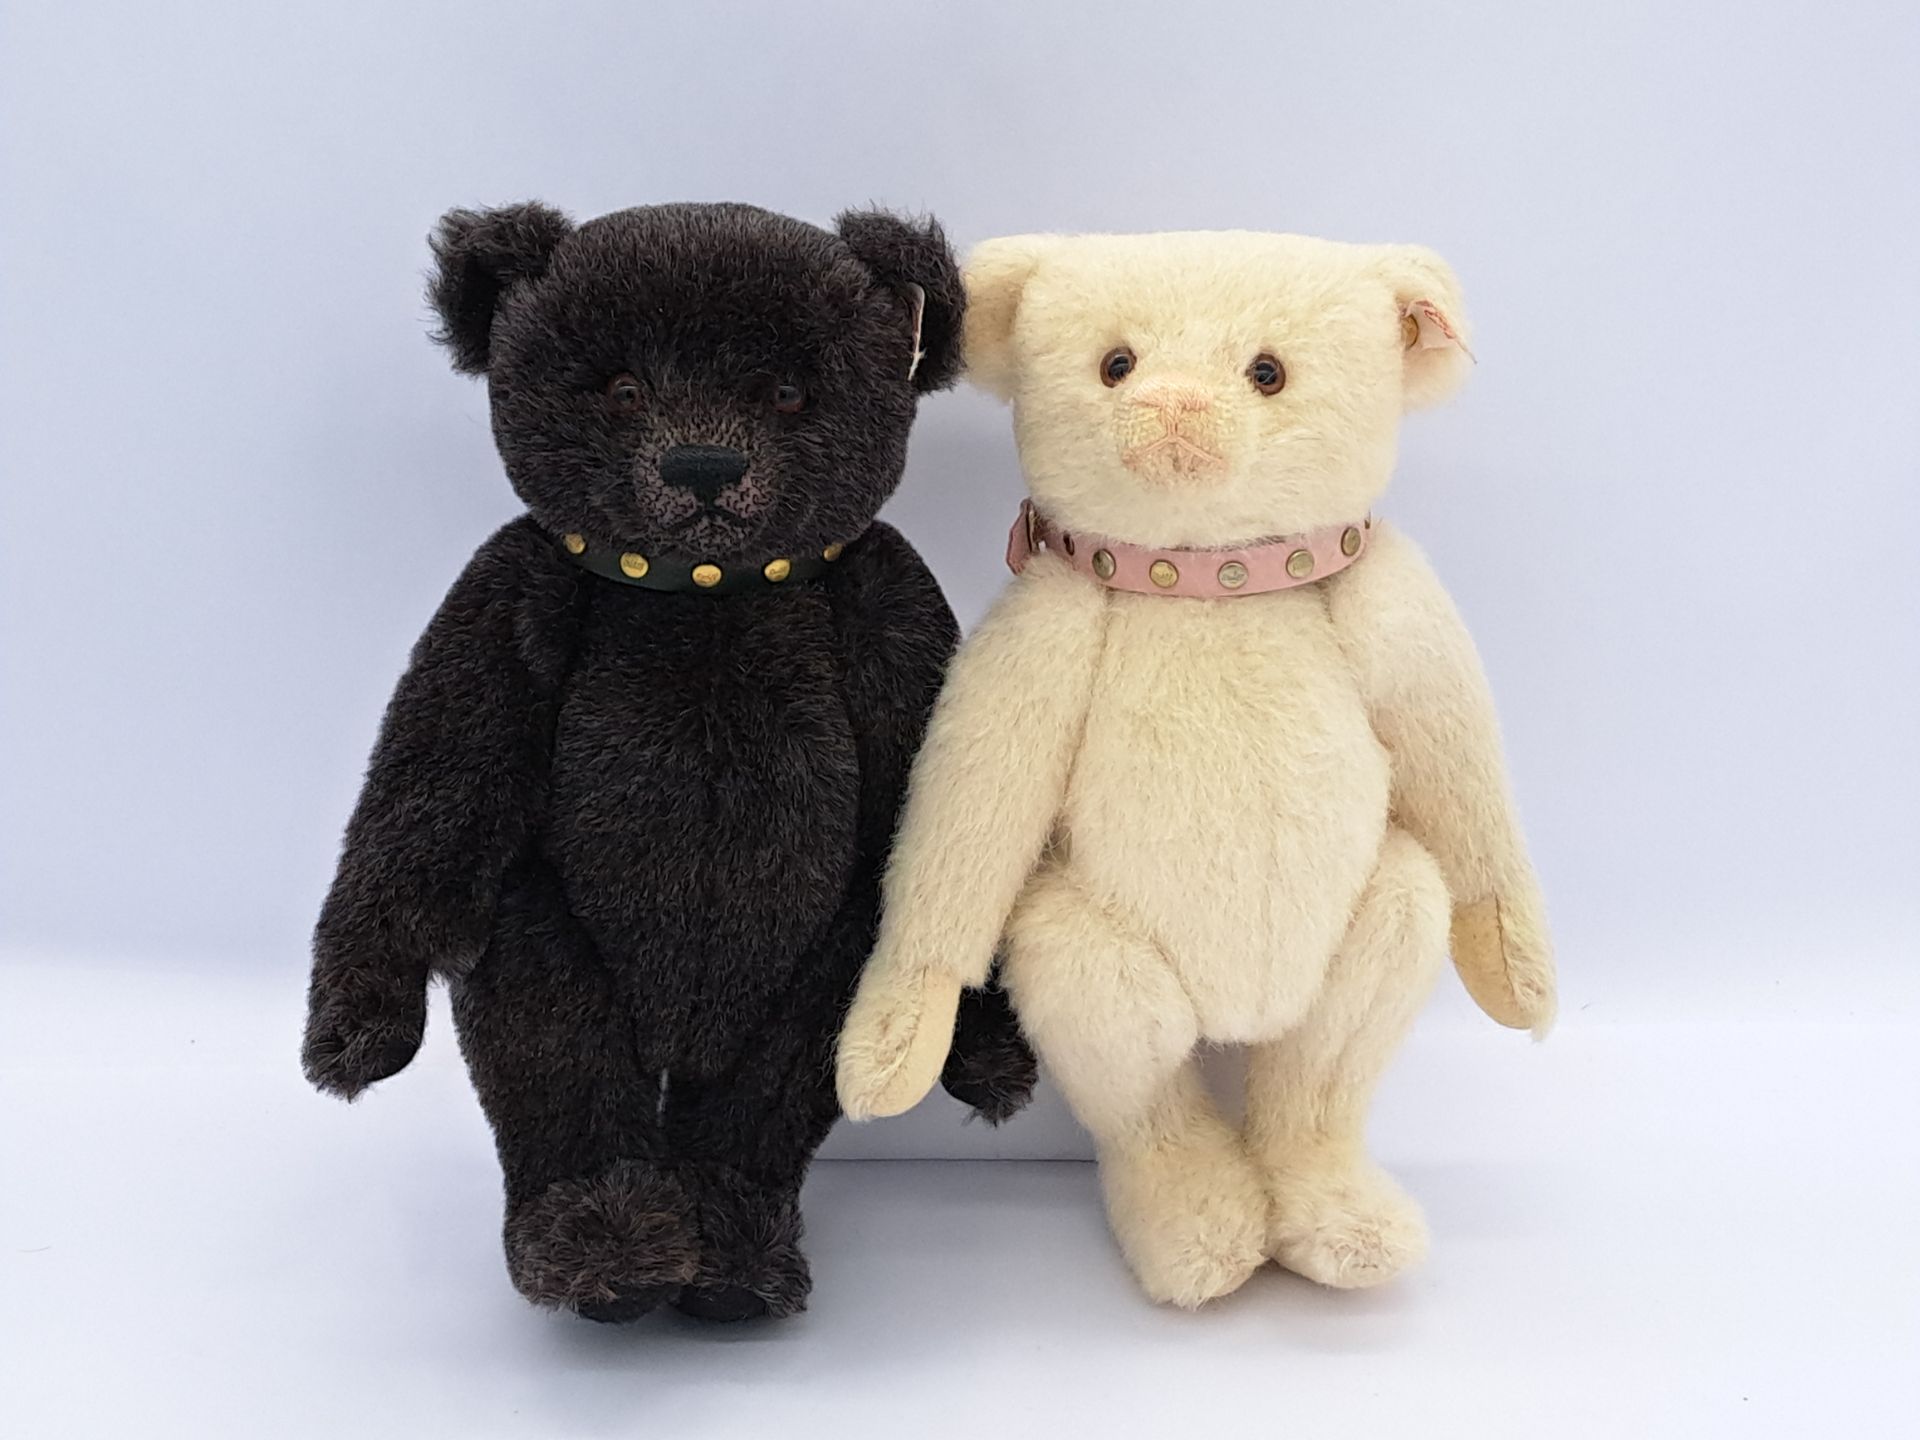 Steiff pair of teddy bears: (1) Jack; (2) Jill